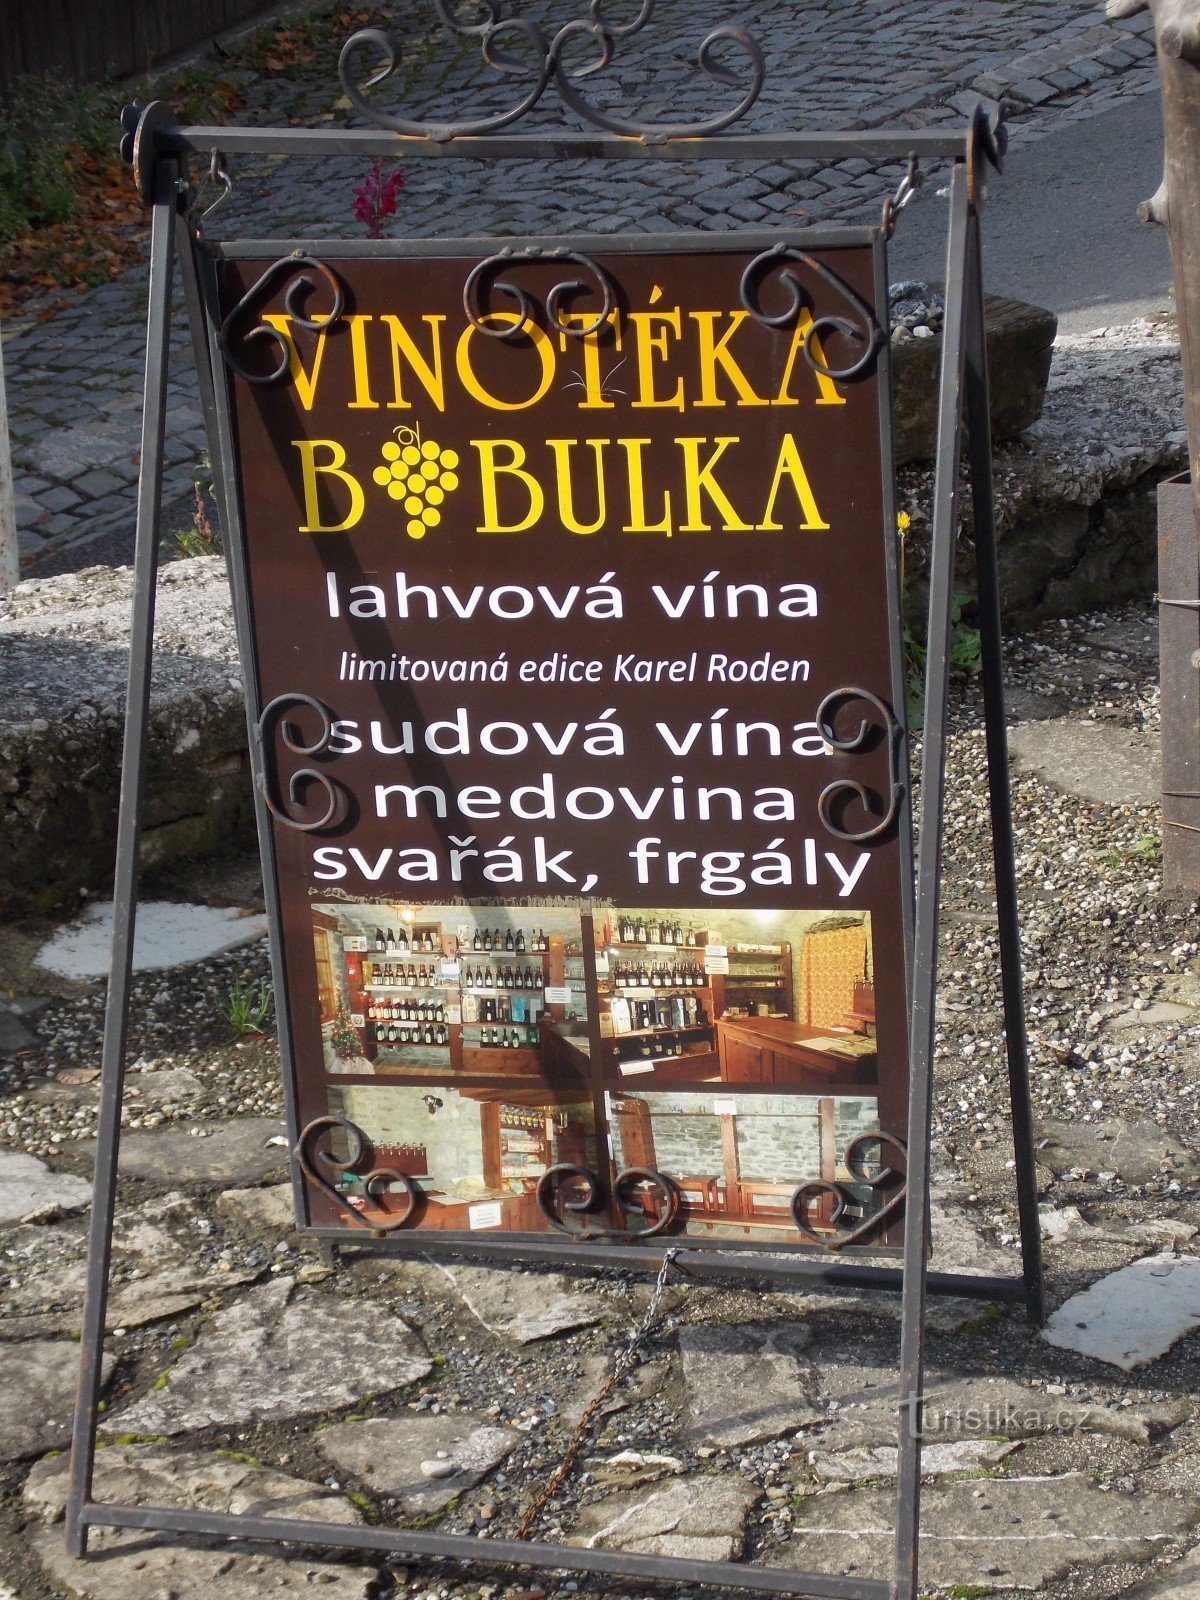 For god vin, gå til vinbutikken Bobulka i Štramberk